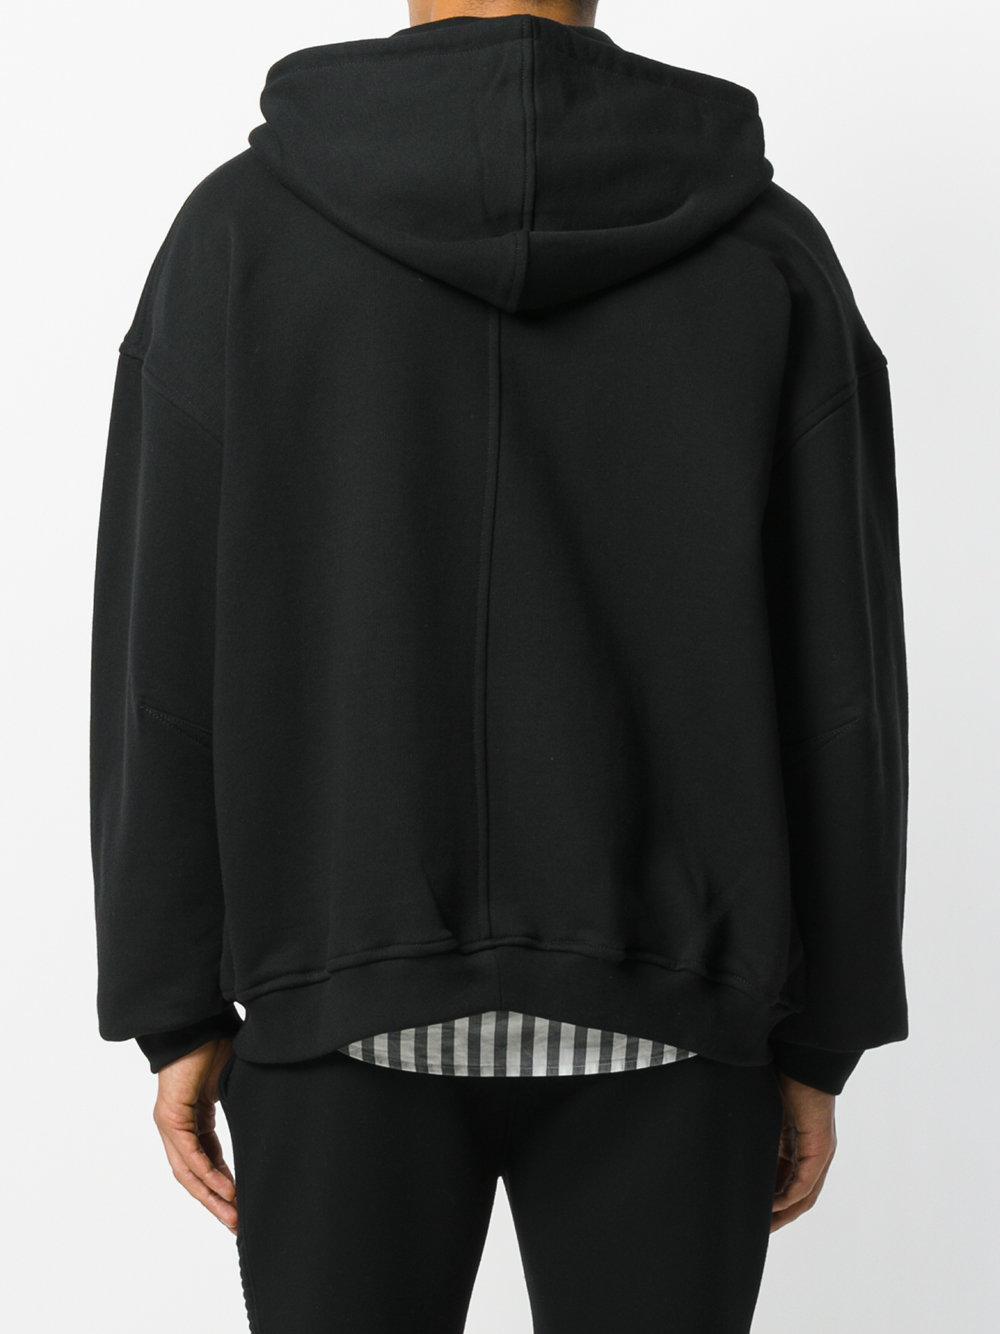 Lyst - Represent Zip Hoodie in Black for Men